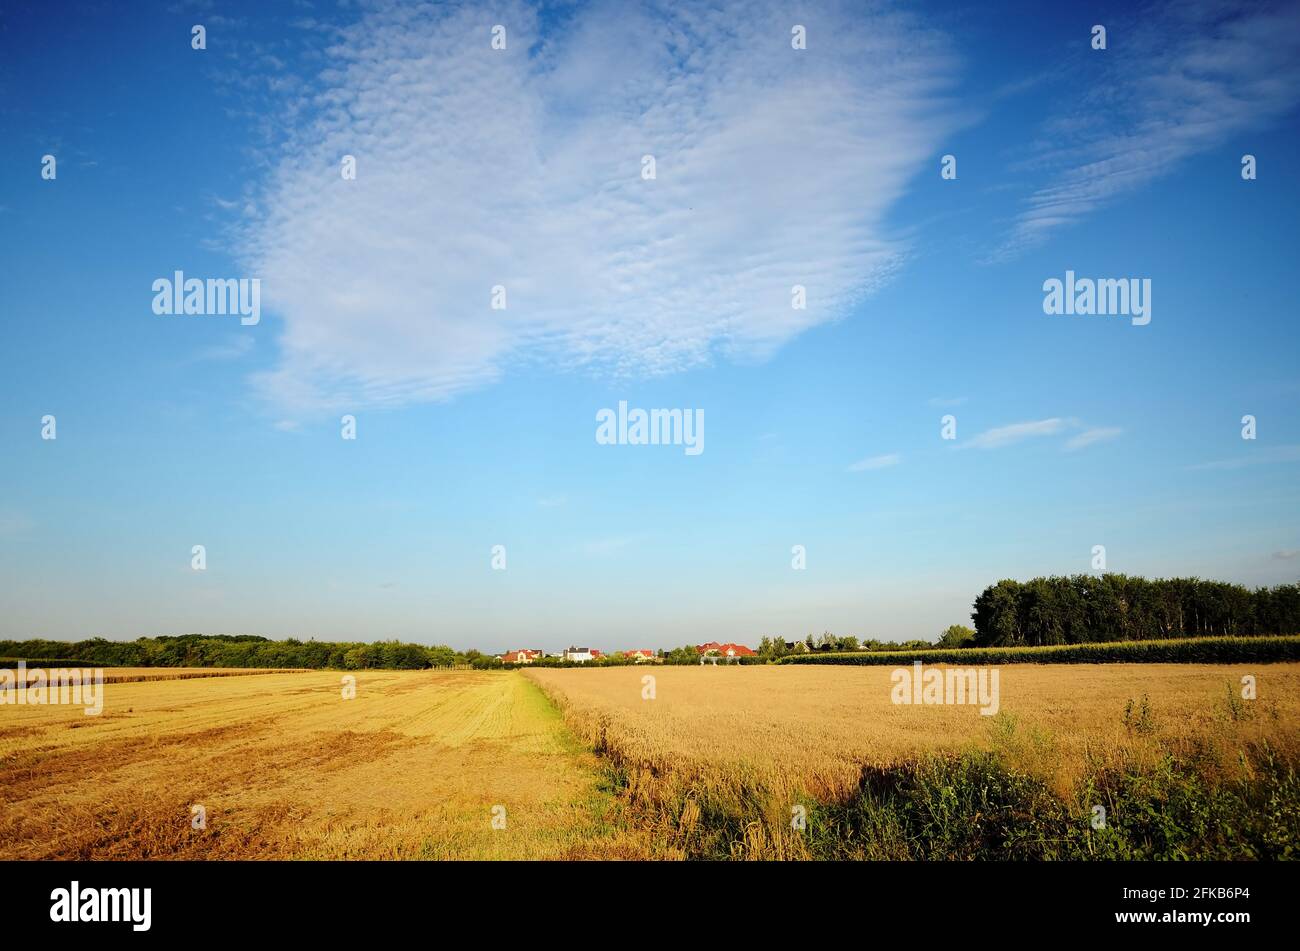 Champs jaunes pendant la saison de récolte, paysage naturel en Basse-Silésie, Pologne. Bel été avec ciel bleu. Banque D'Images